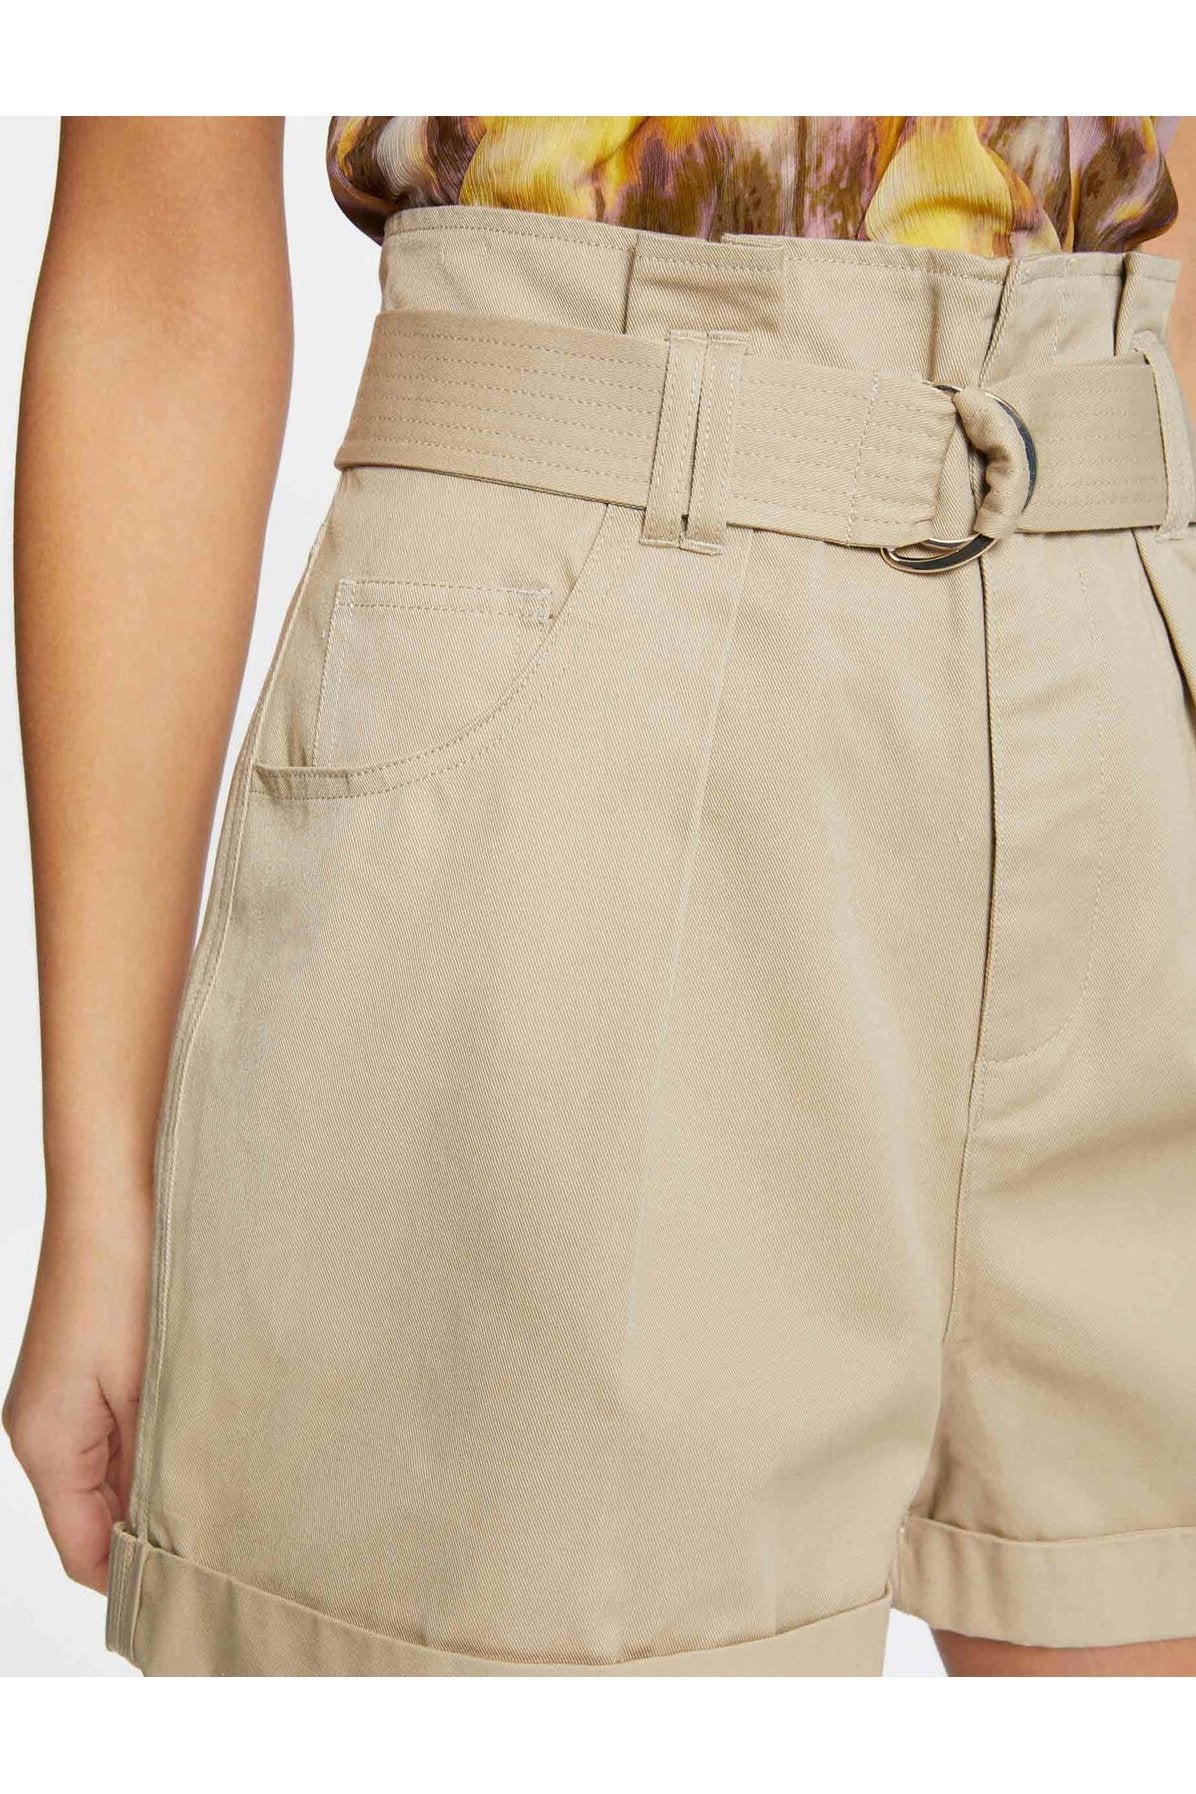 MORGAN - מכנסיים קצרים גזרה גבוהה בצבע בז' - MASHBIR//365